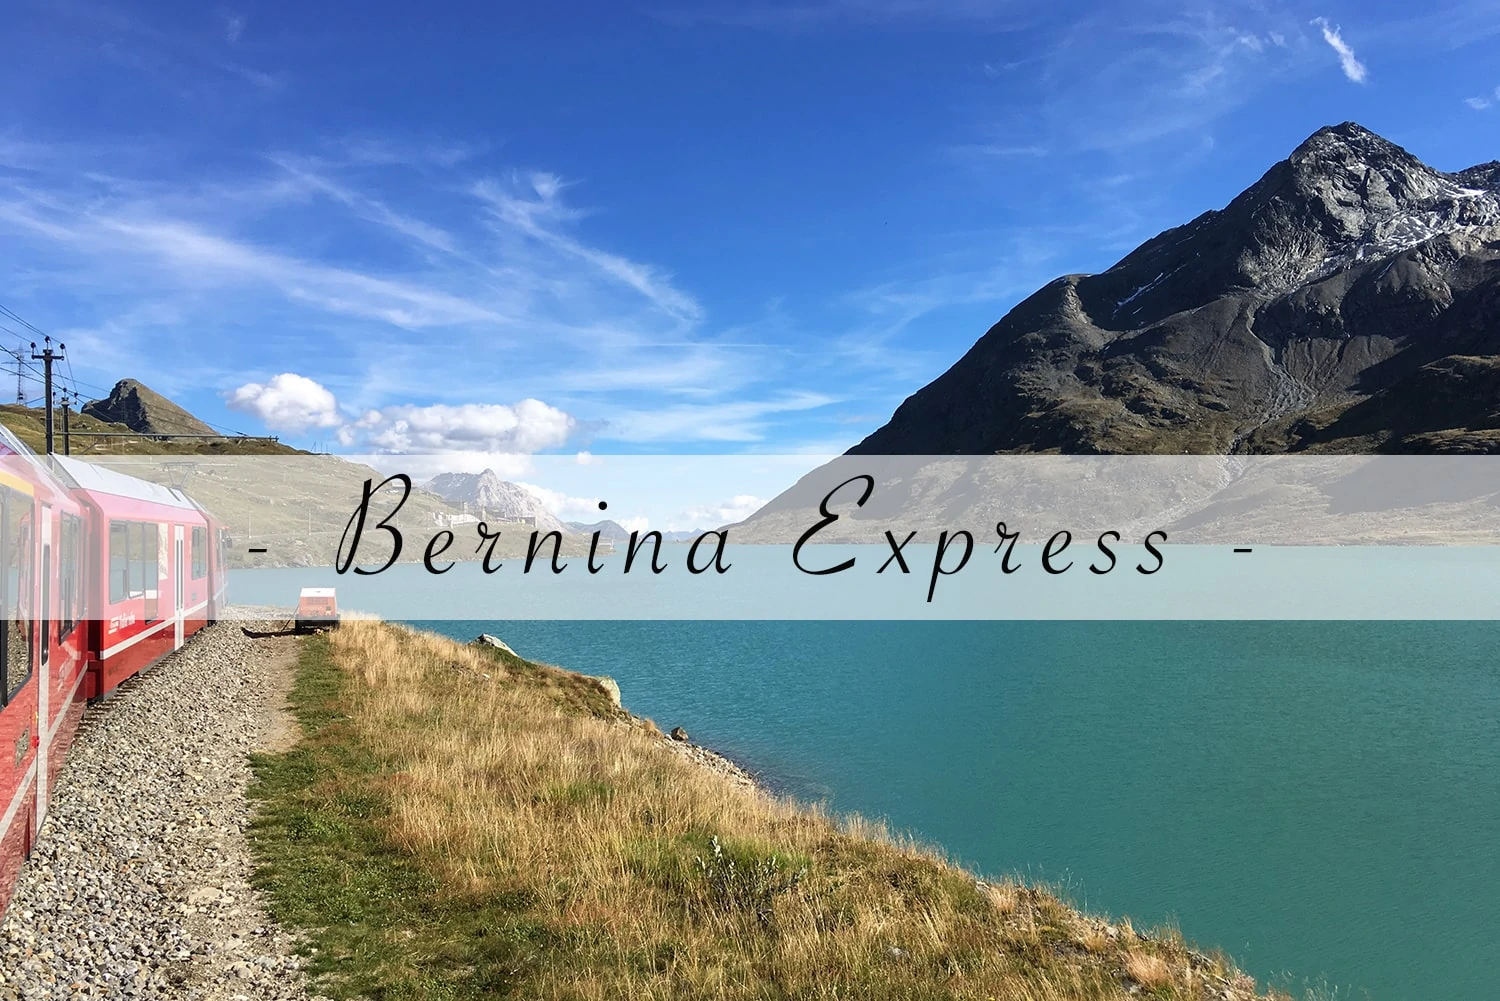 Comboio Bernina Express